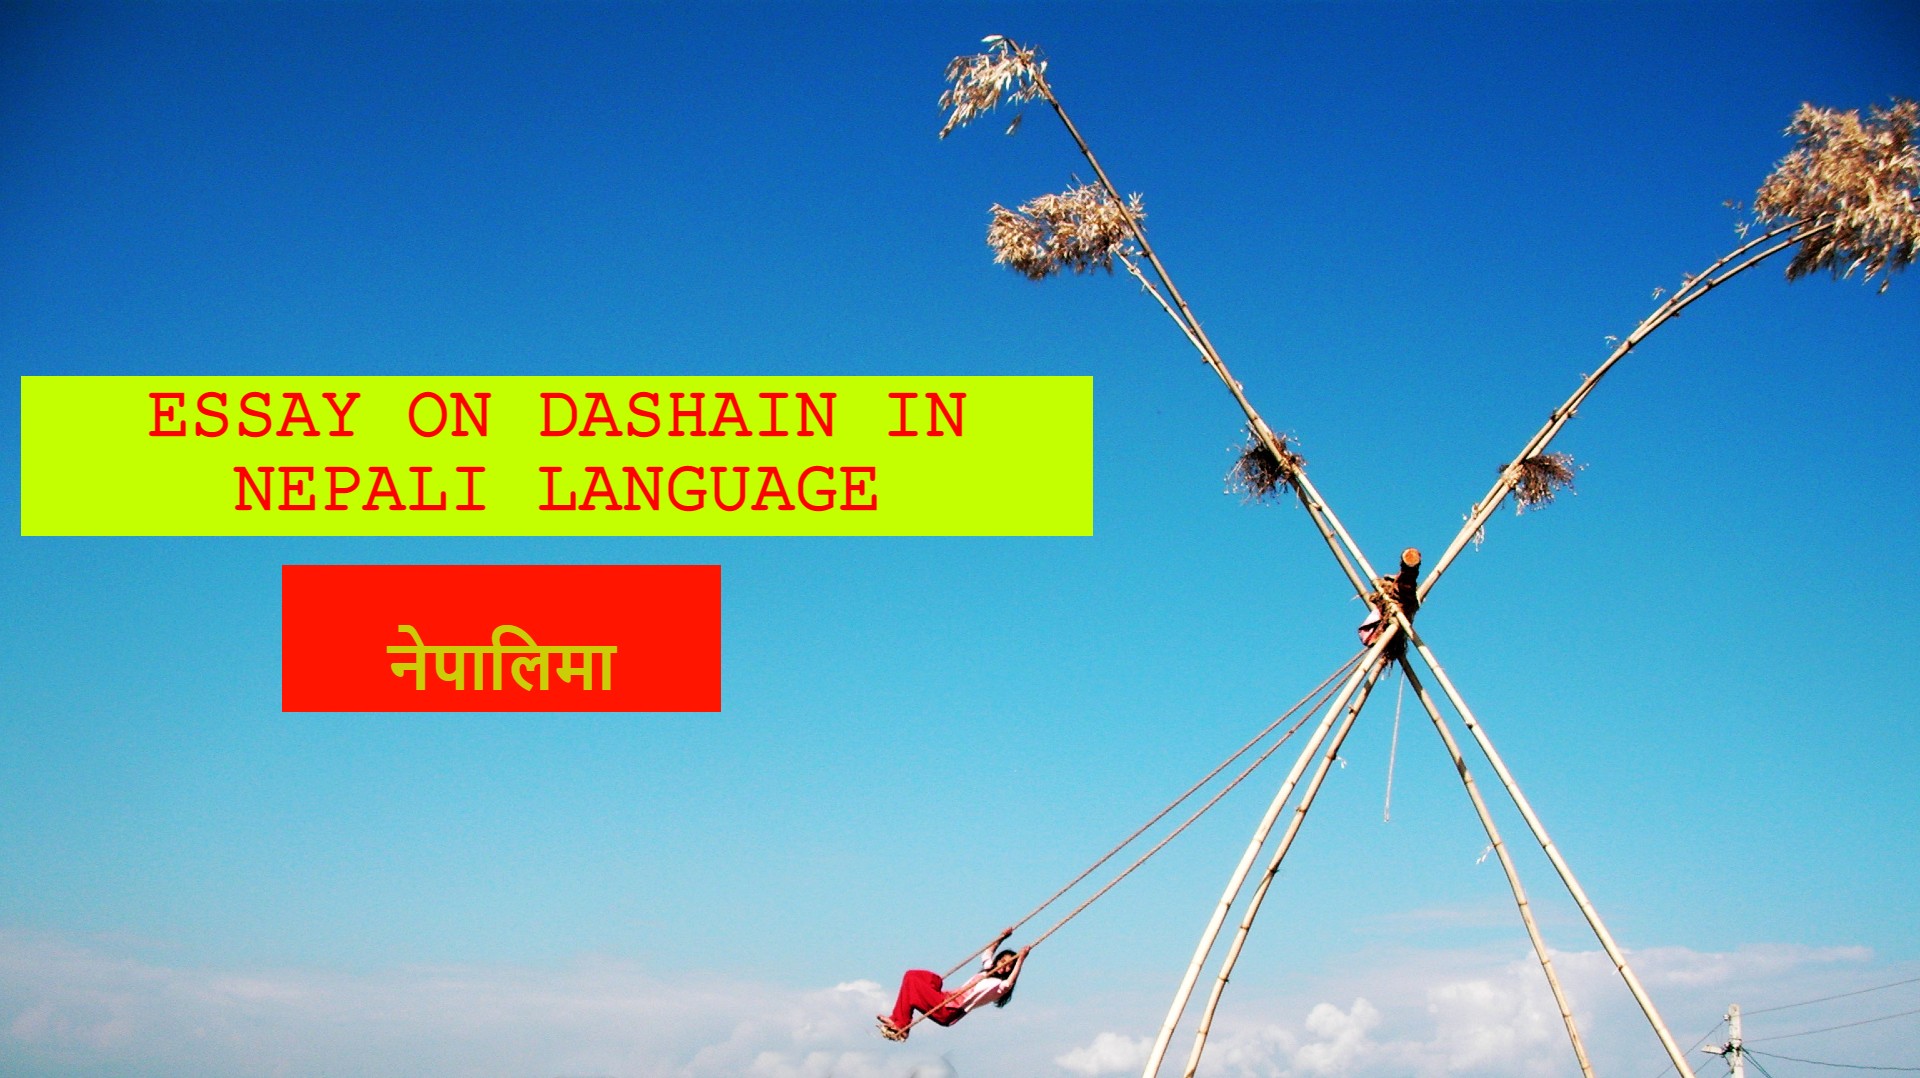 Essay on Dashain in Nepali Language,Essay on Dashain in Nepali Language, essay on dashain for class 6, class7,class8,class9,class10,200words,300words,500words, 600words, dashain festival